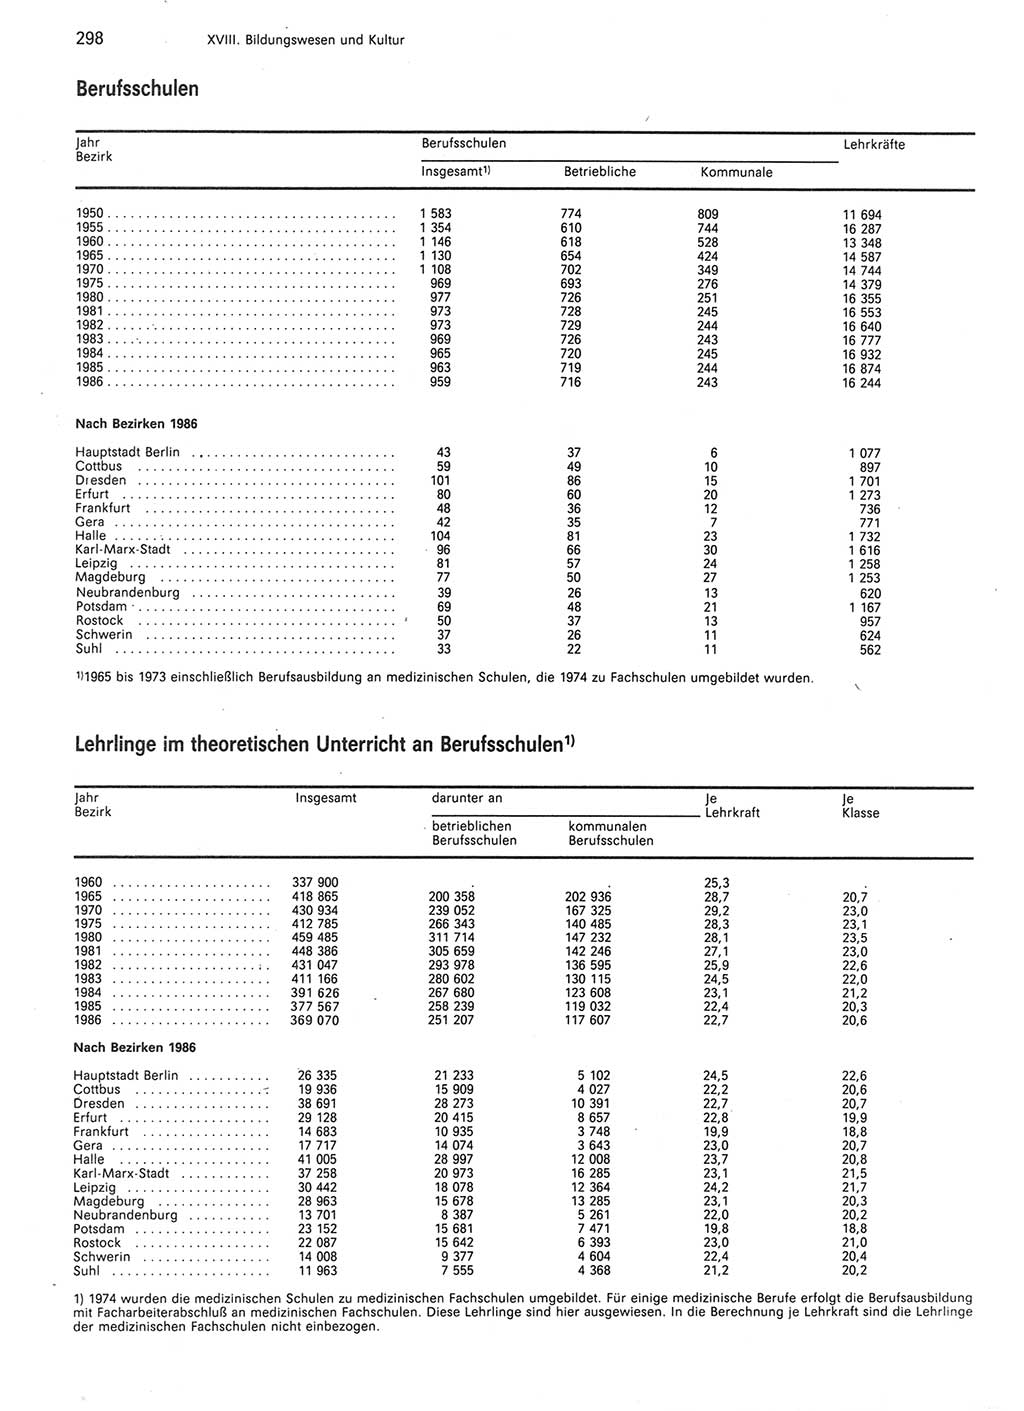 Statistisches Jahrbuch der Deutschen Demokratischen Republik (DDR) 1987, Seite 298 (Stat. Jb. DDR 1987, S. 298)